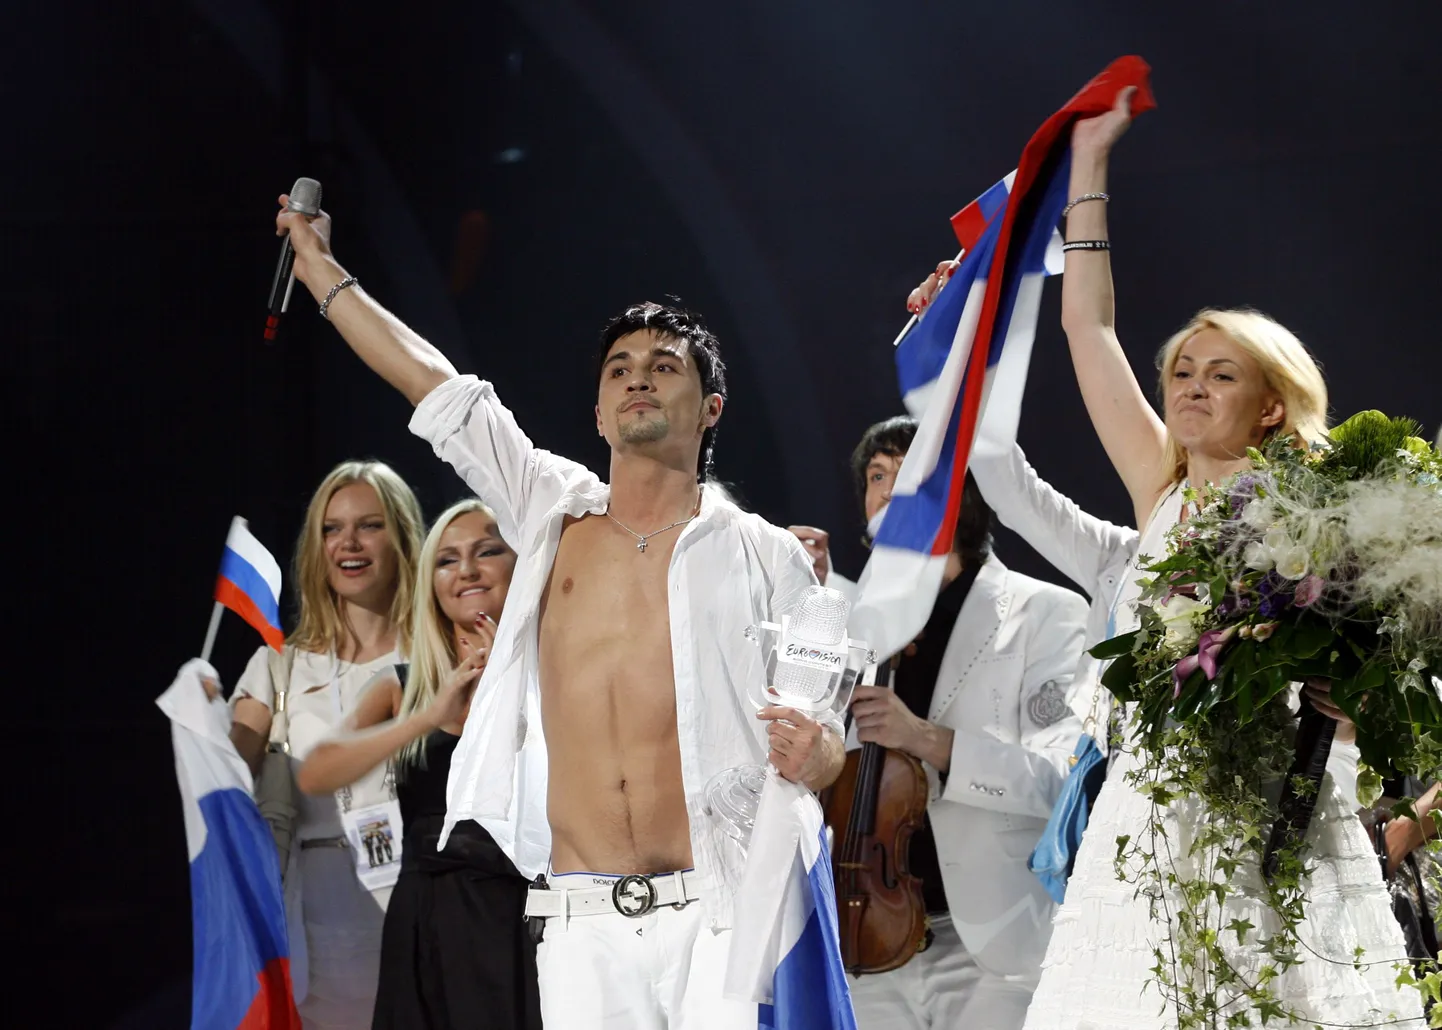 Pildil on Eurovisioon 2008 võitja Dima Bilan.